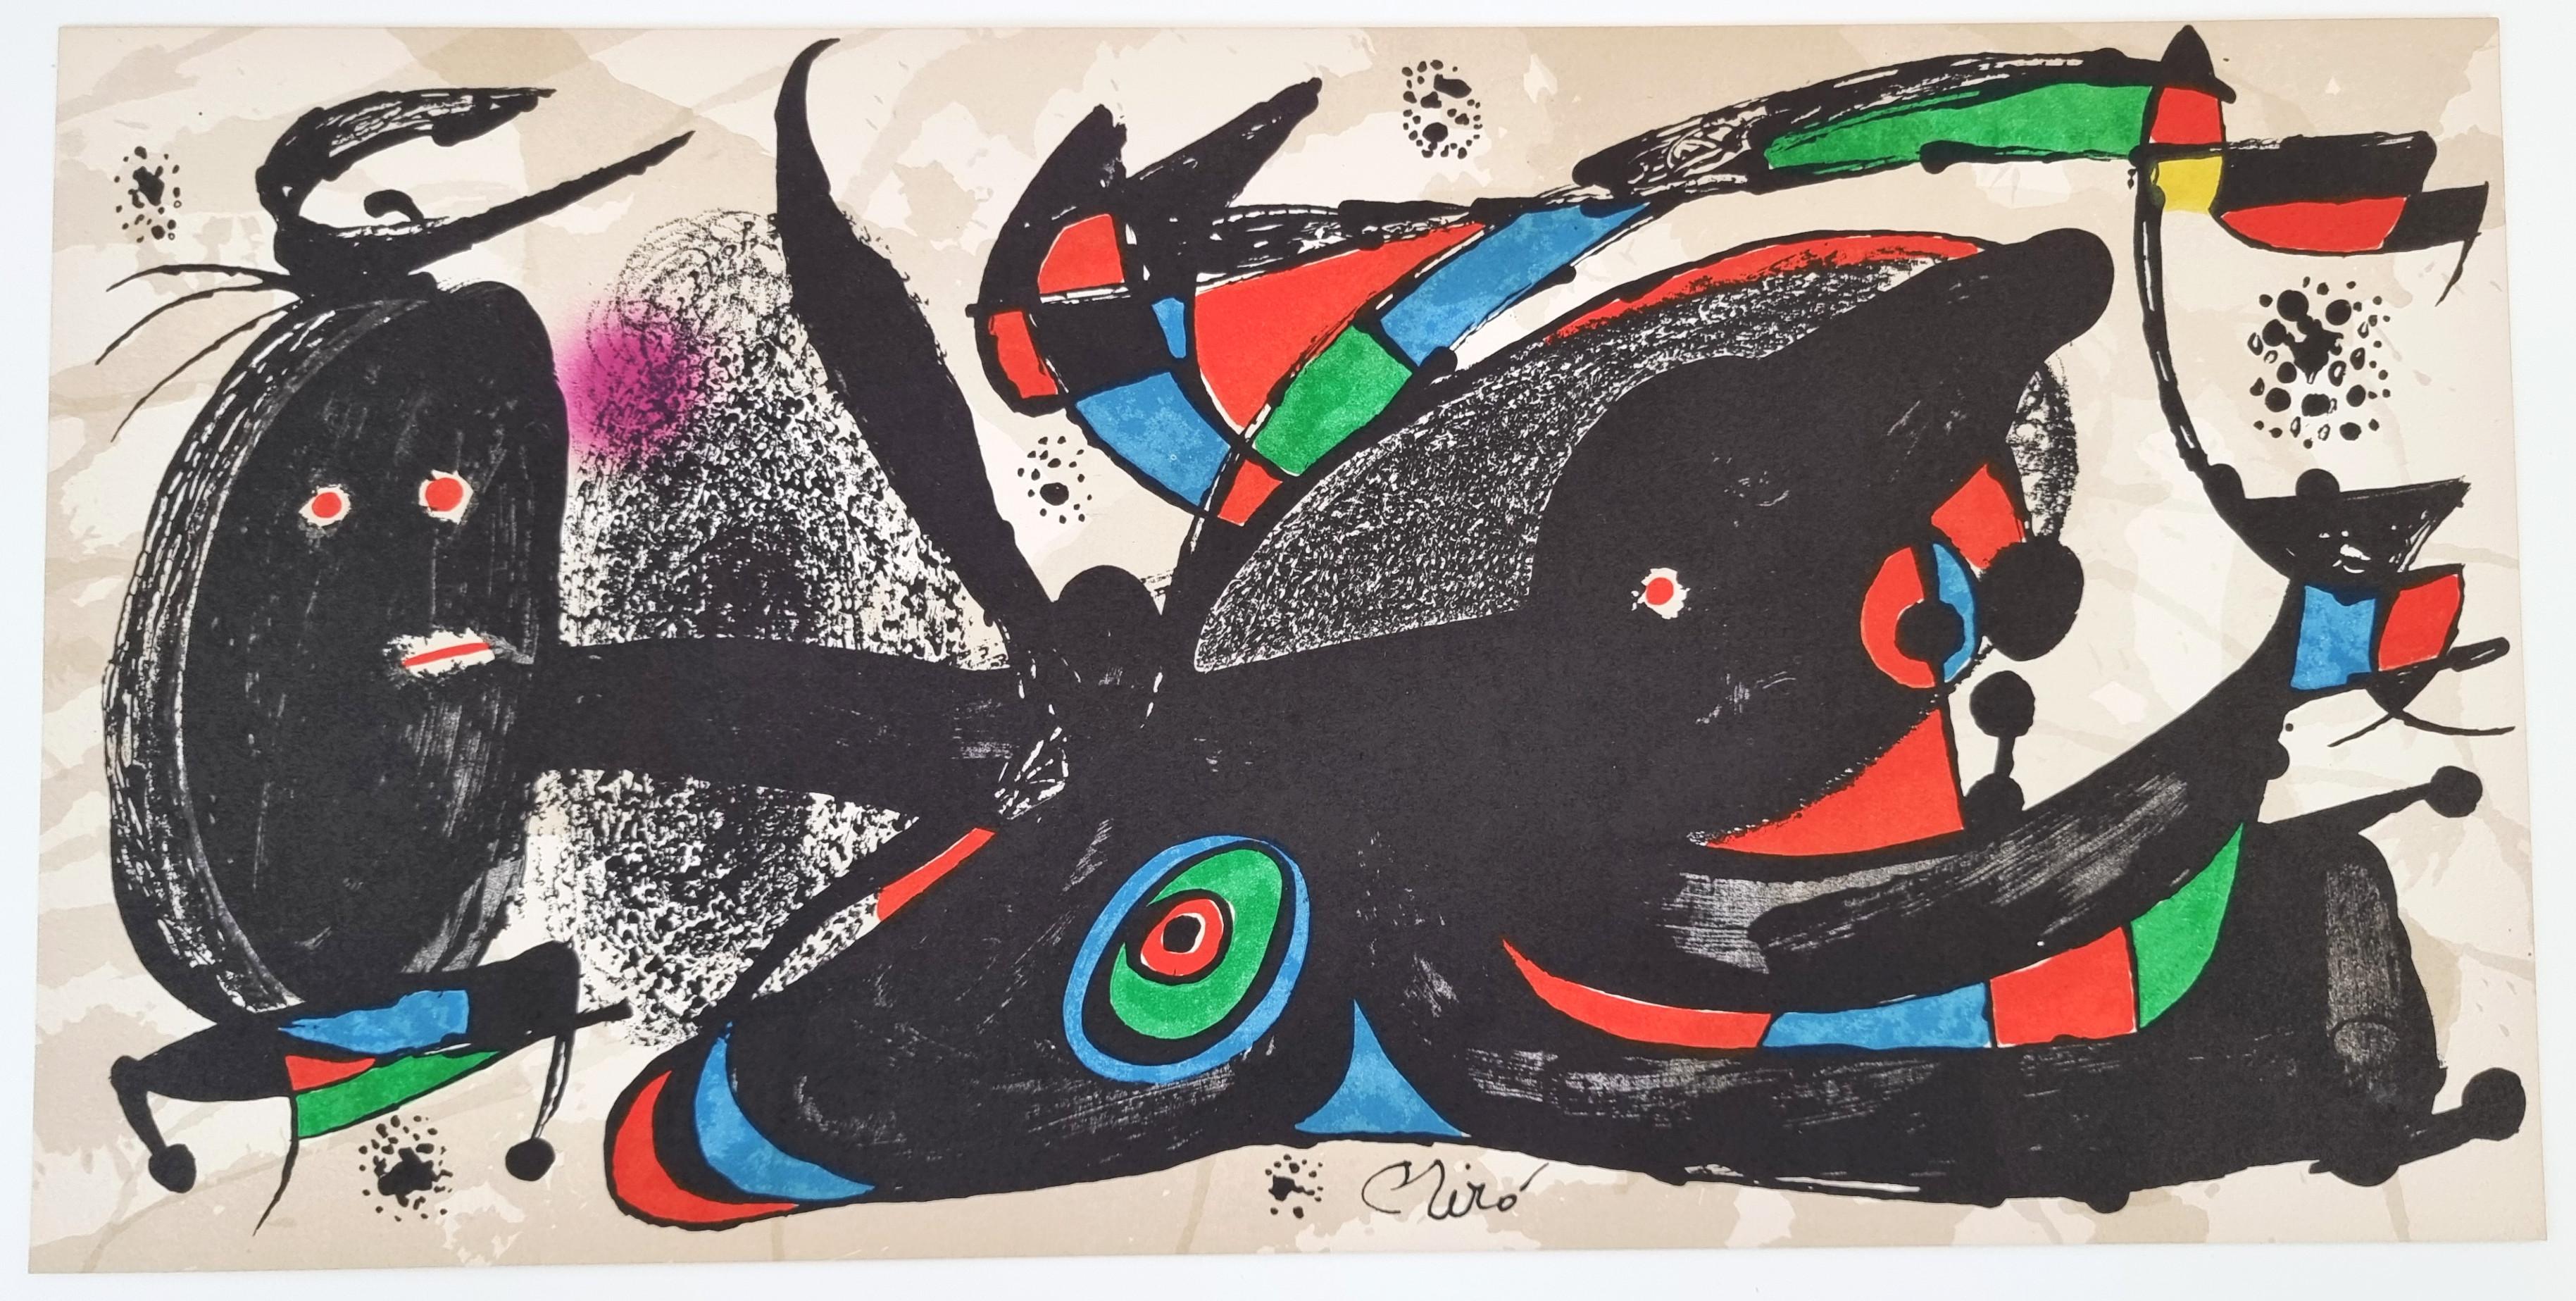 Escultor - Denmark - Print by Joan Miró